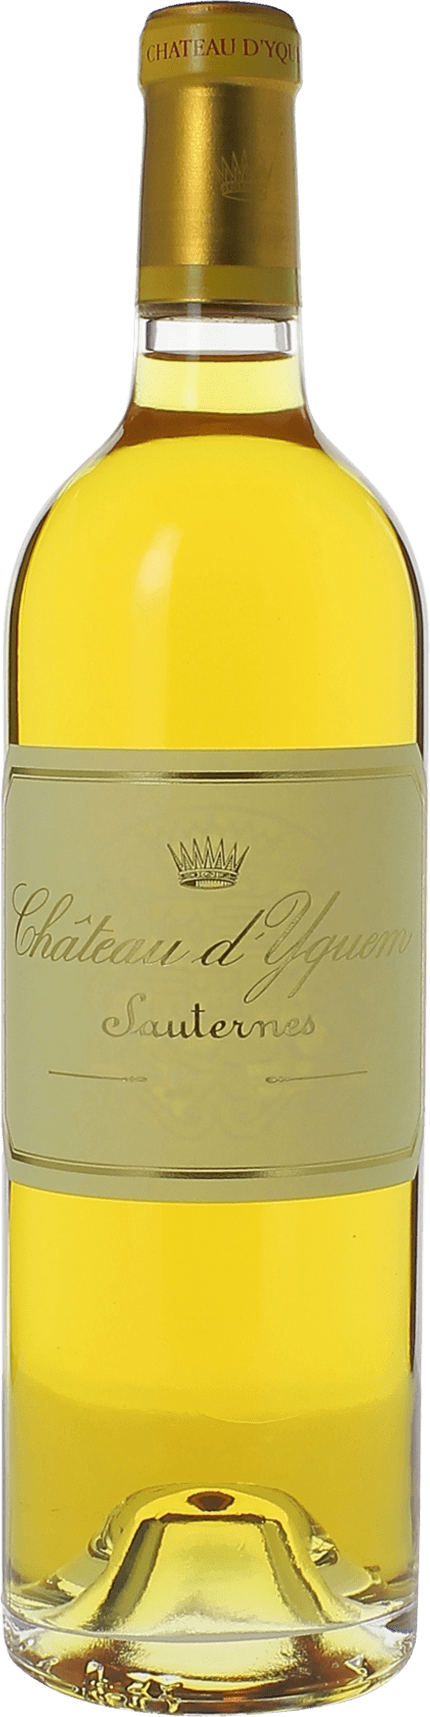 Yquem 1971 1er Grand cru class Sauternes, Bordeaux blanc